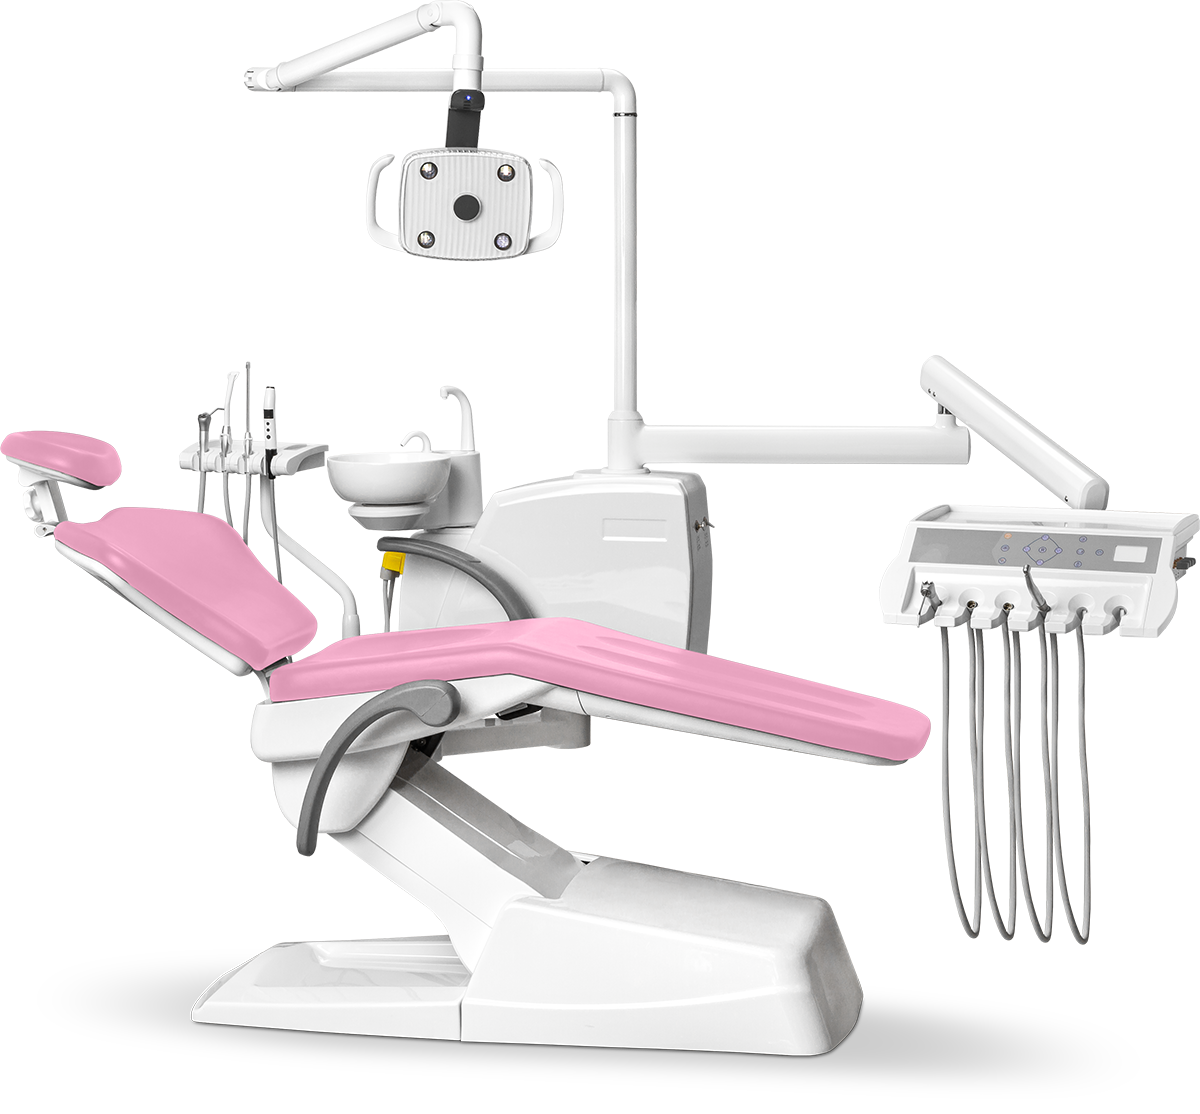 Стоматологическая установка Mercury 330 стандарт нижняя подача, Розовая